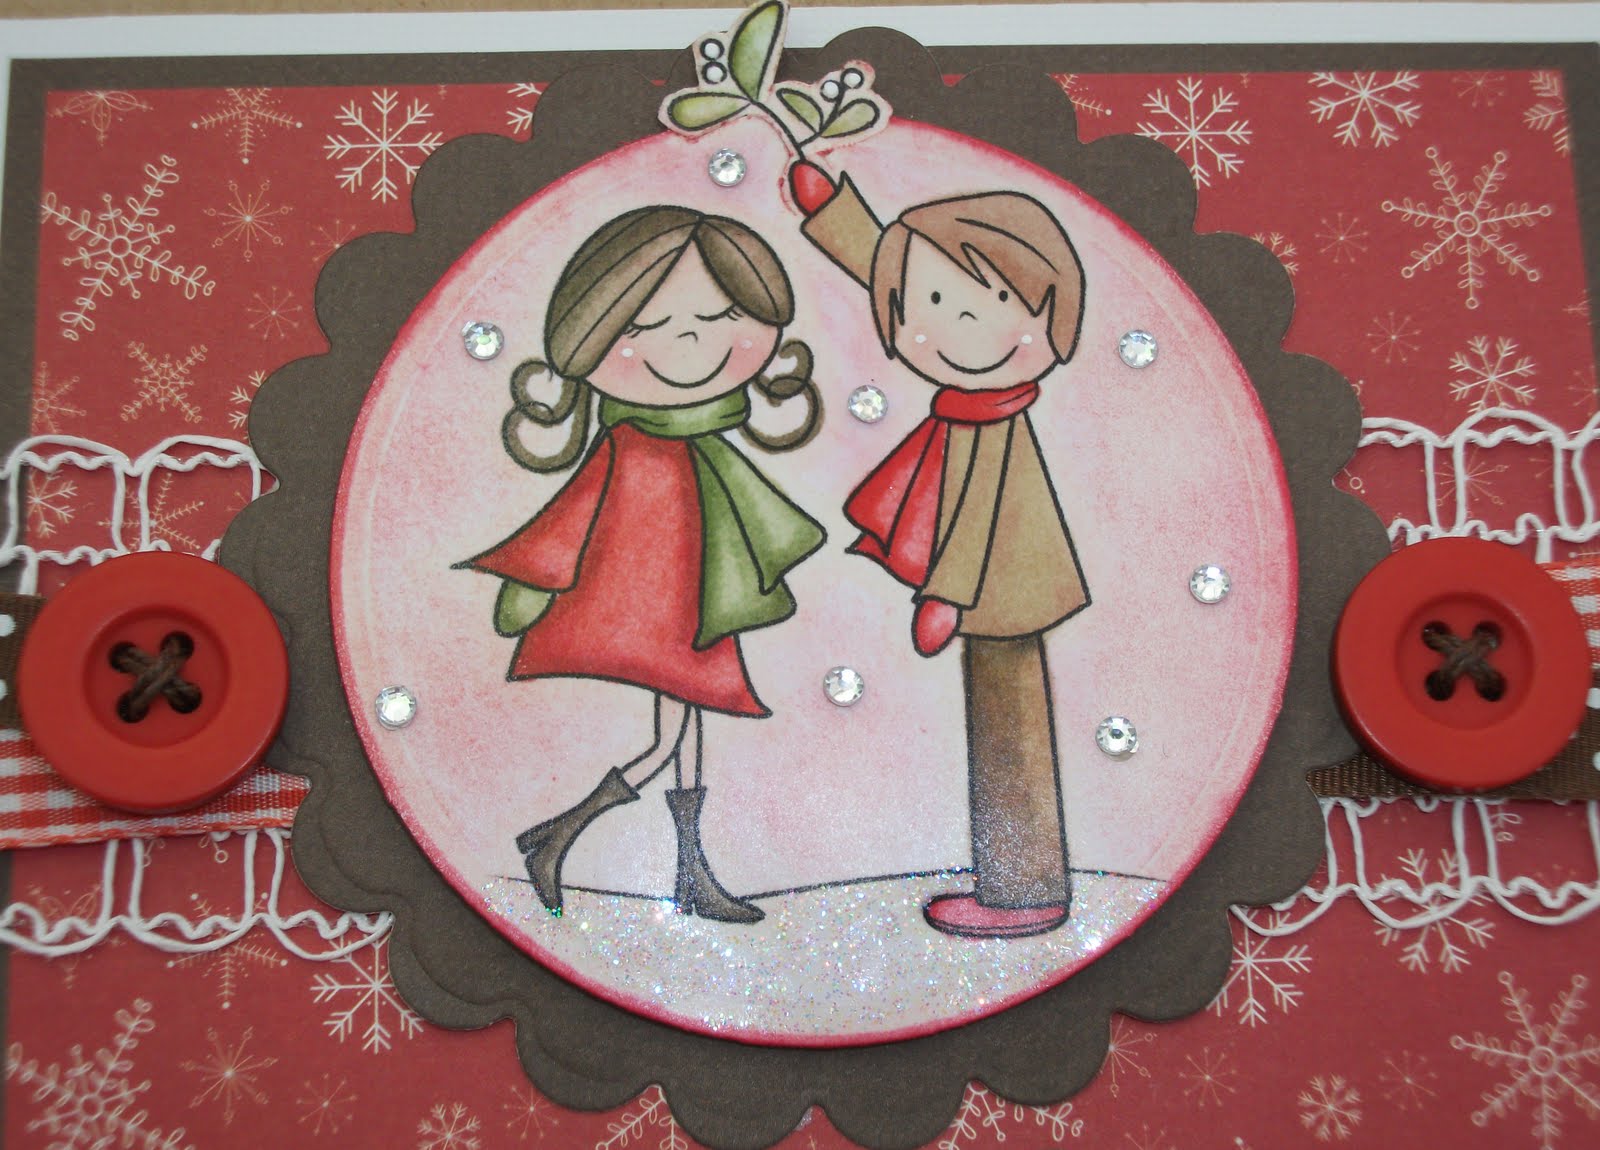 http://4.bp.blogspot.com/_gROCxnb25zA/TIYSTpmhDGI/AAAAAAAABHo/Cd71SBm5n44/s1600/Christmas+kiss+2.jpg